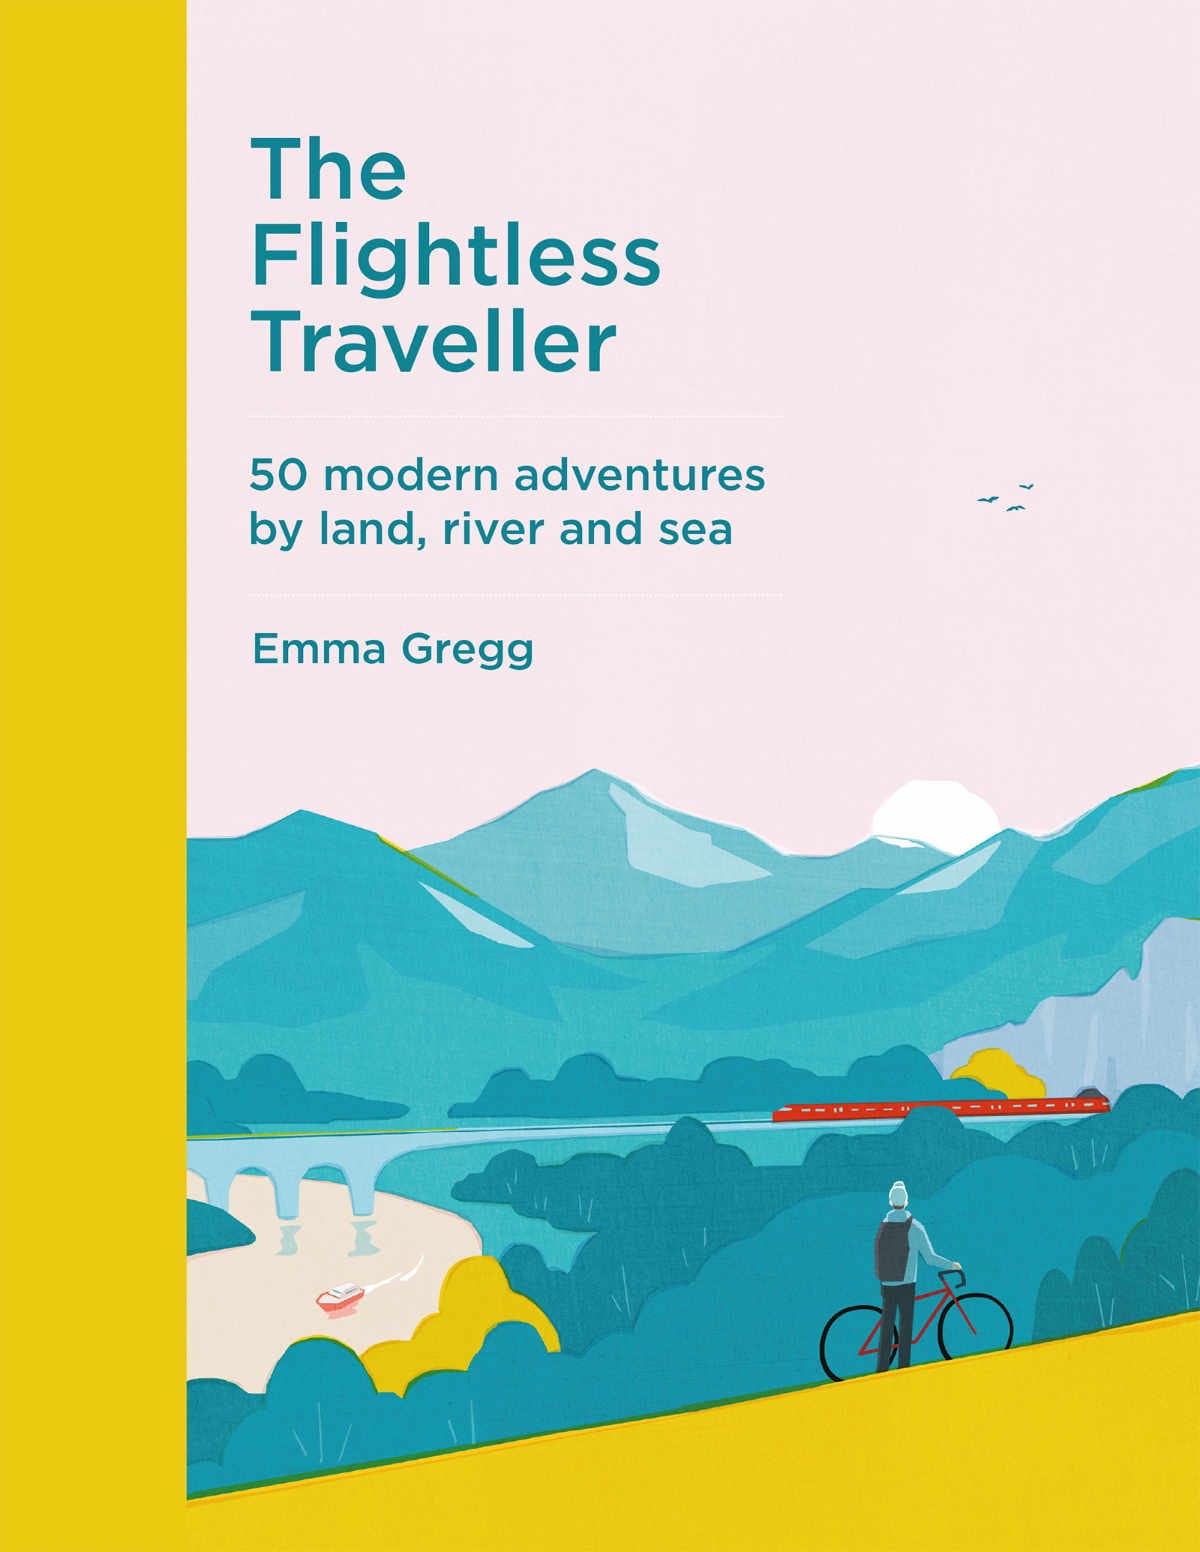 Flightless traveler book cover